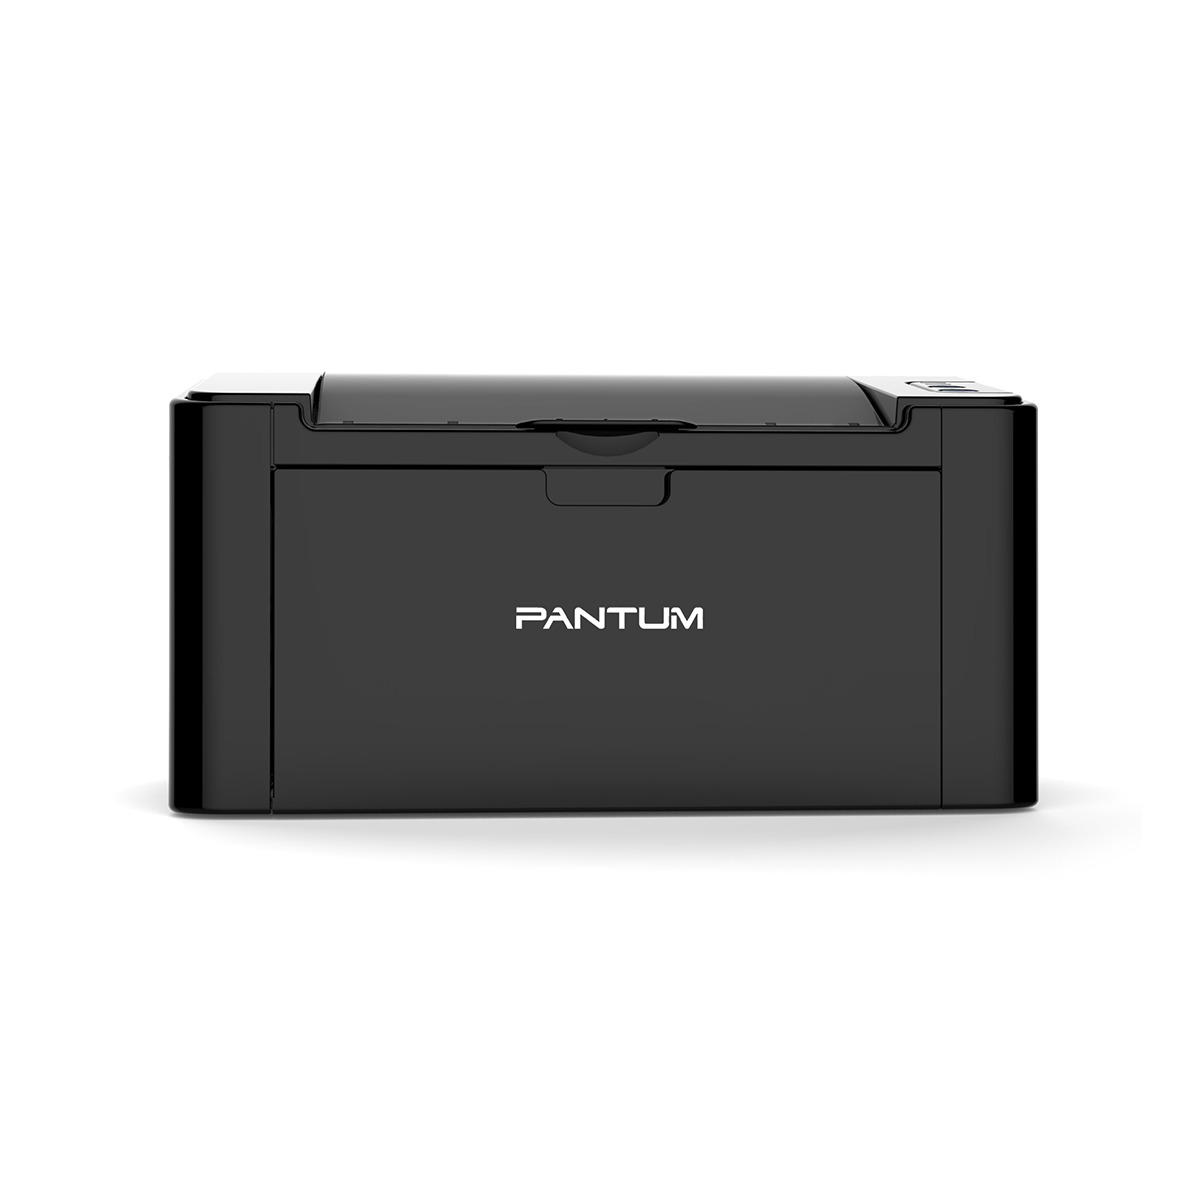 Принтер лазерный Pantum P2500, черно-белая печать, 22 стр/мин, 1200x1200 dpi, 128Мб RAM, USB